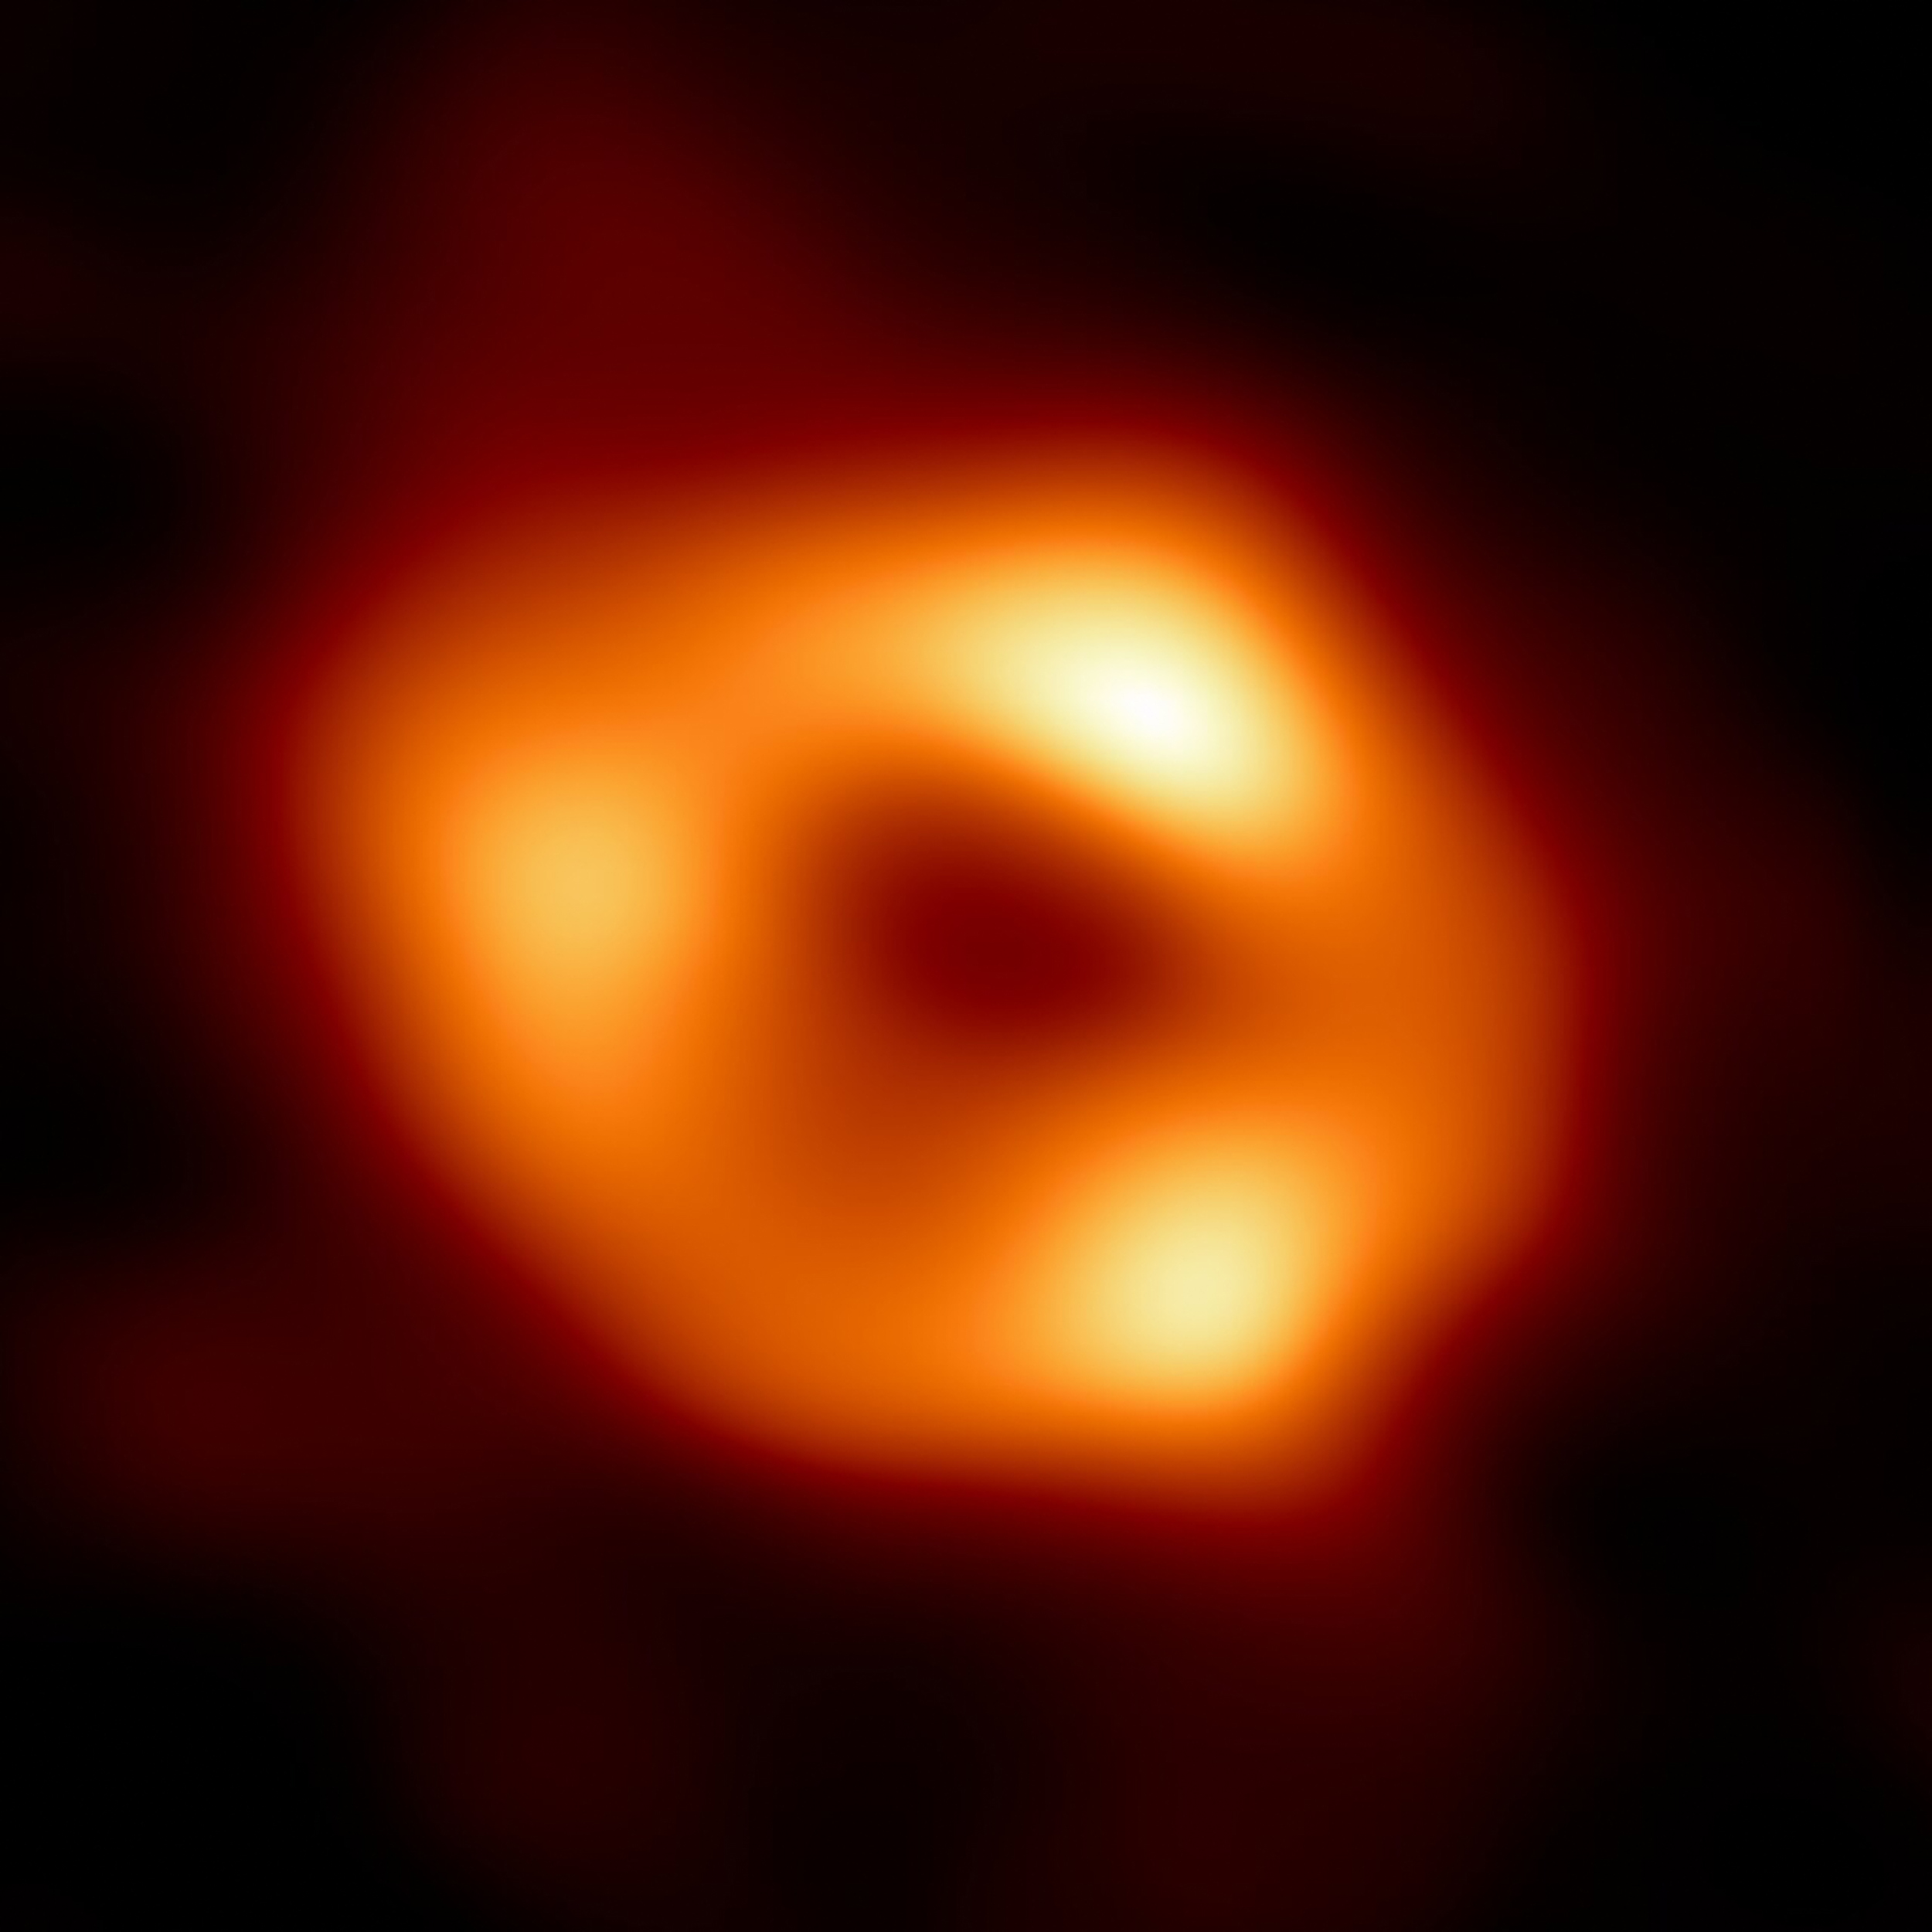 天文学家公布银河系最大黑洞首张照片 